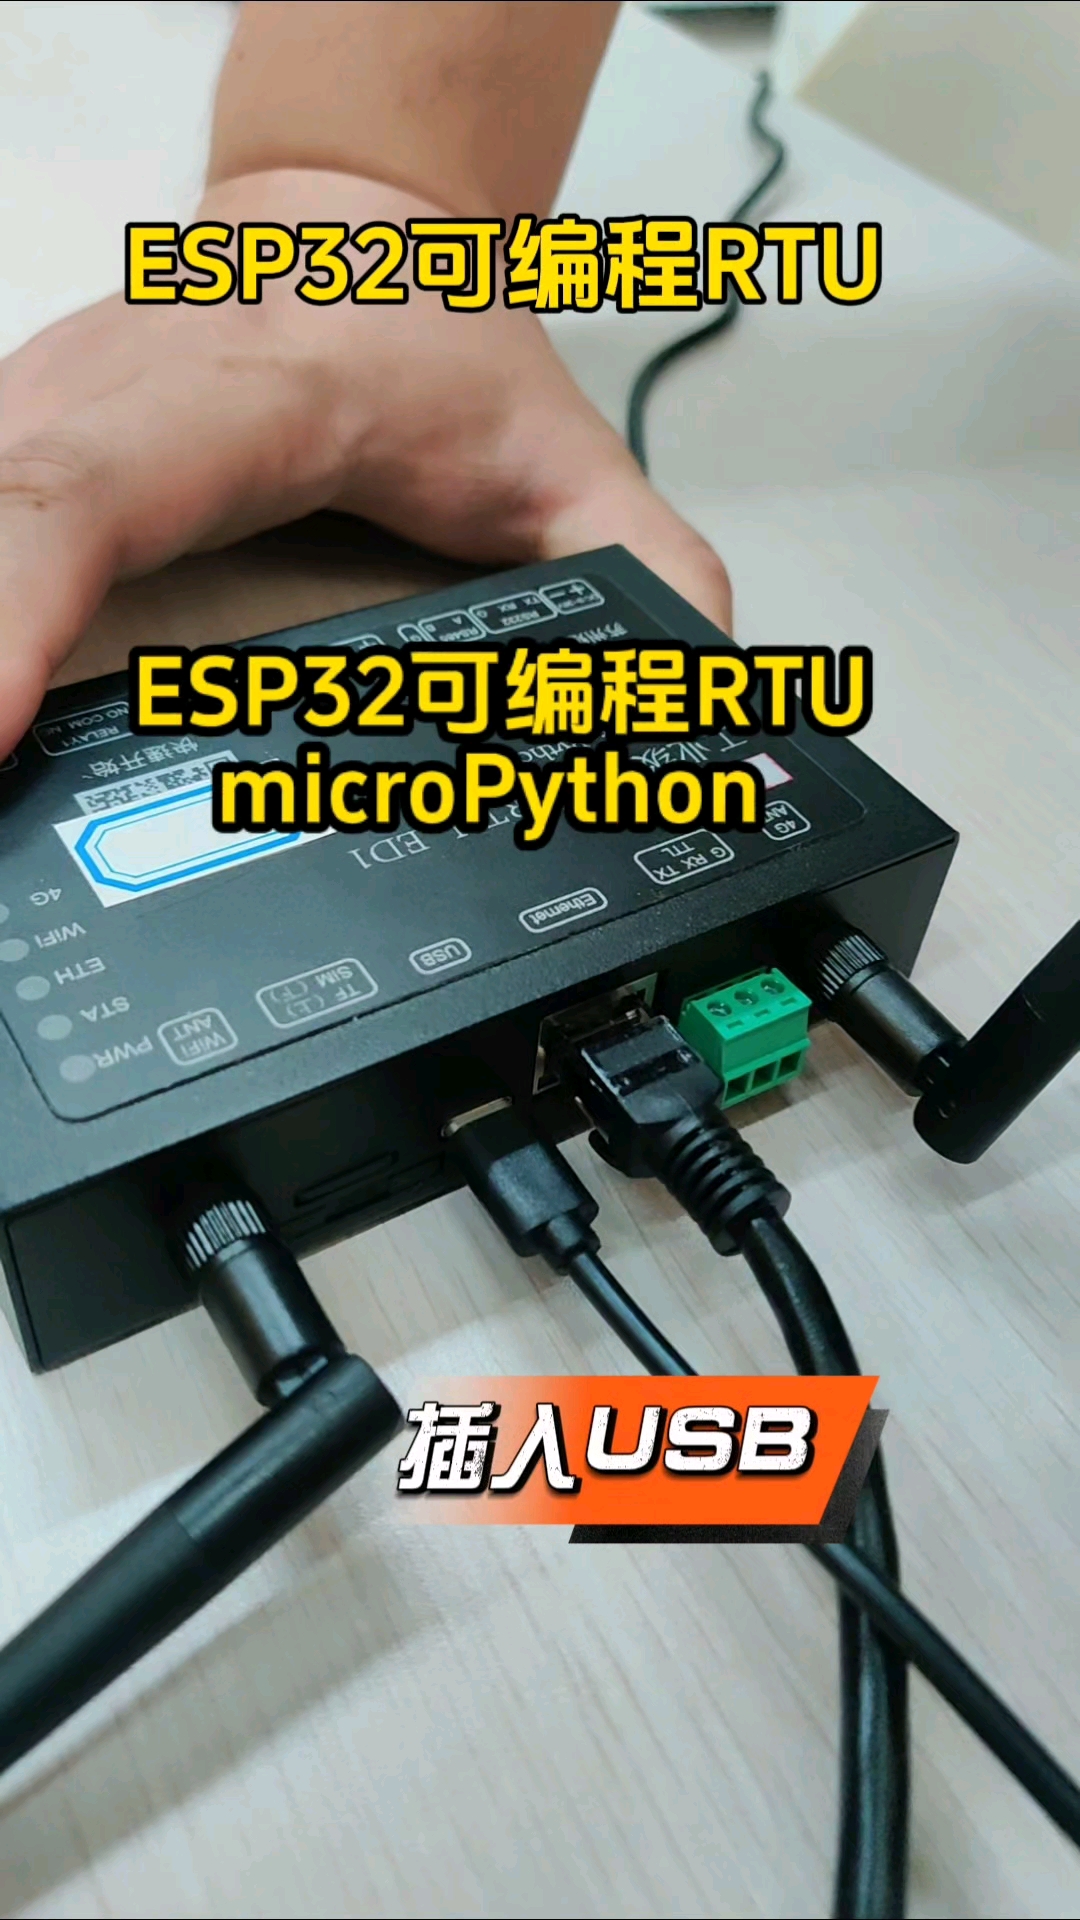 esp32網口版microPython可編程RTU產品展示#單片機 #plc #電子愛好者 #物聯網開發 